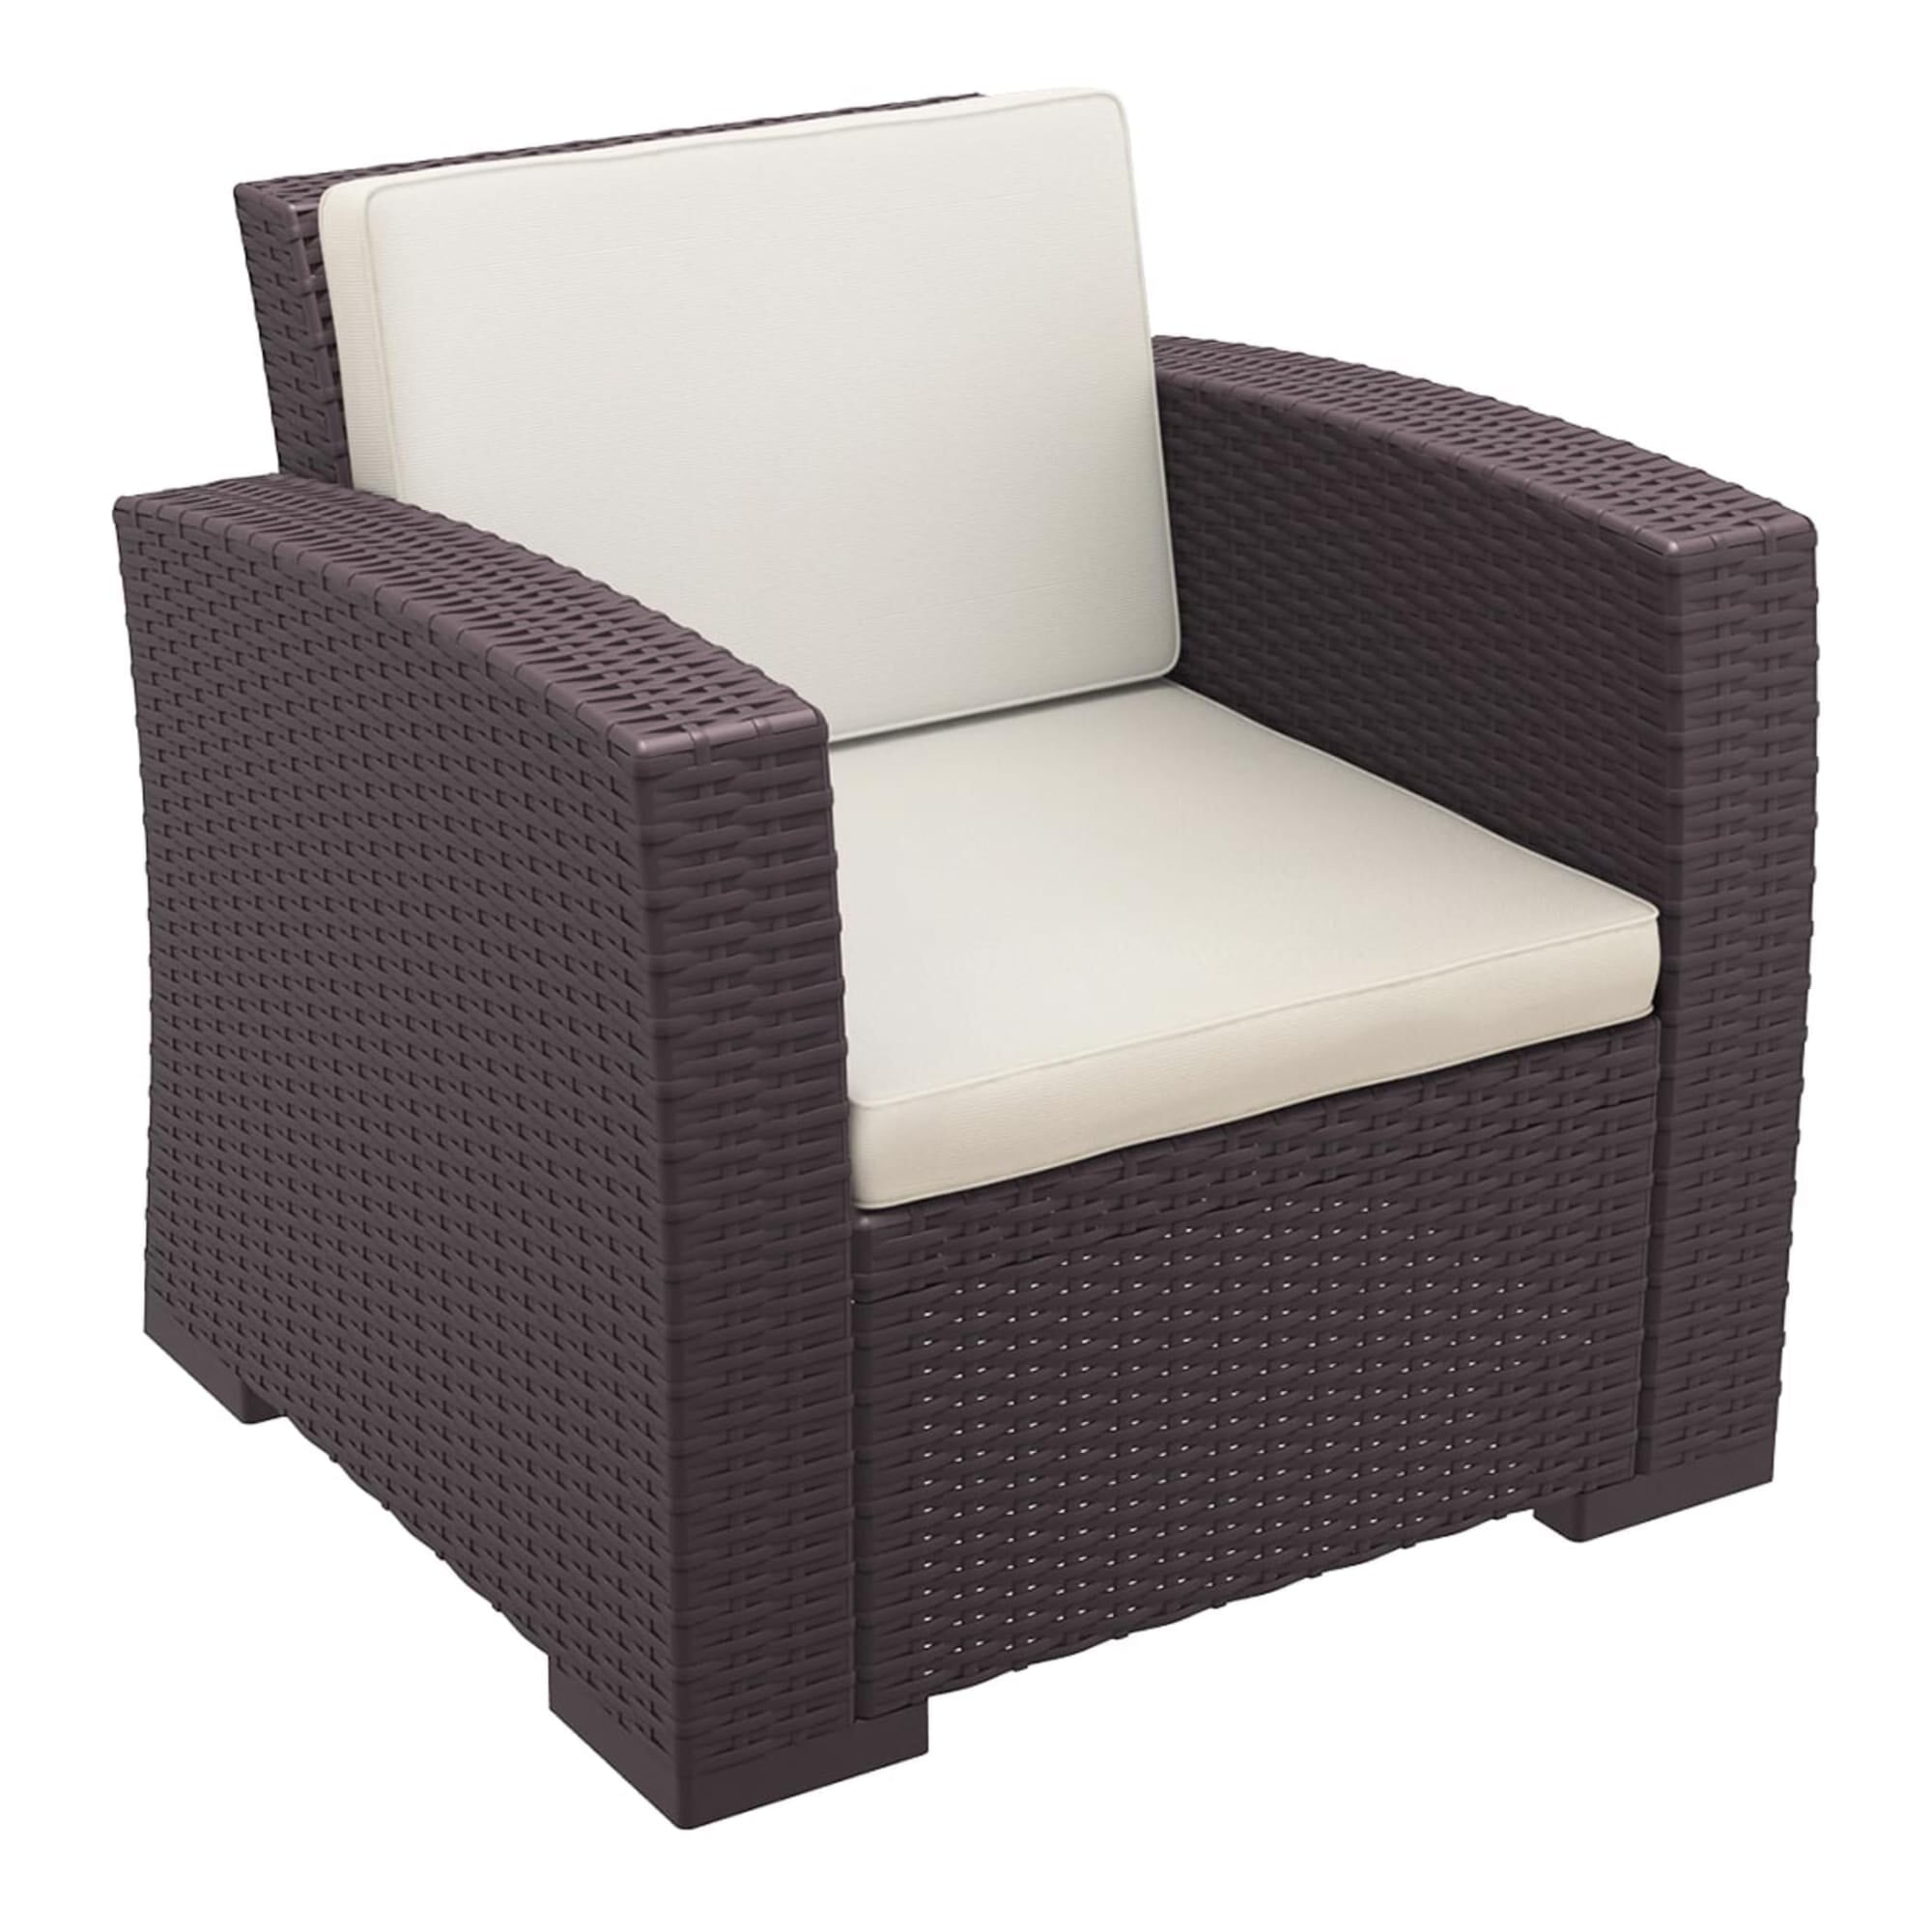 Garbar Monaco chair cushion indoors, outdoors 58x39x7 beige